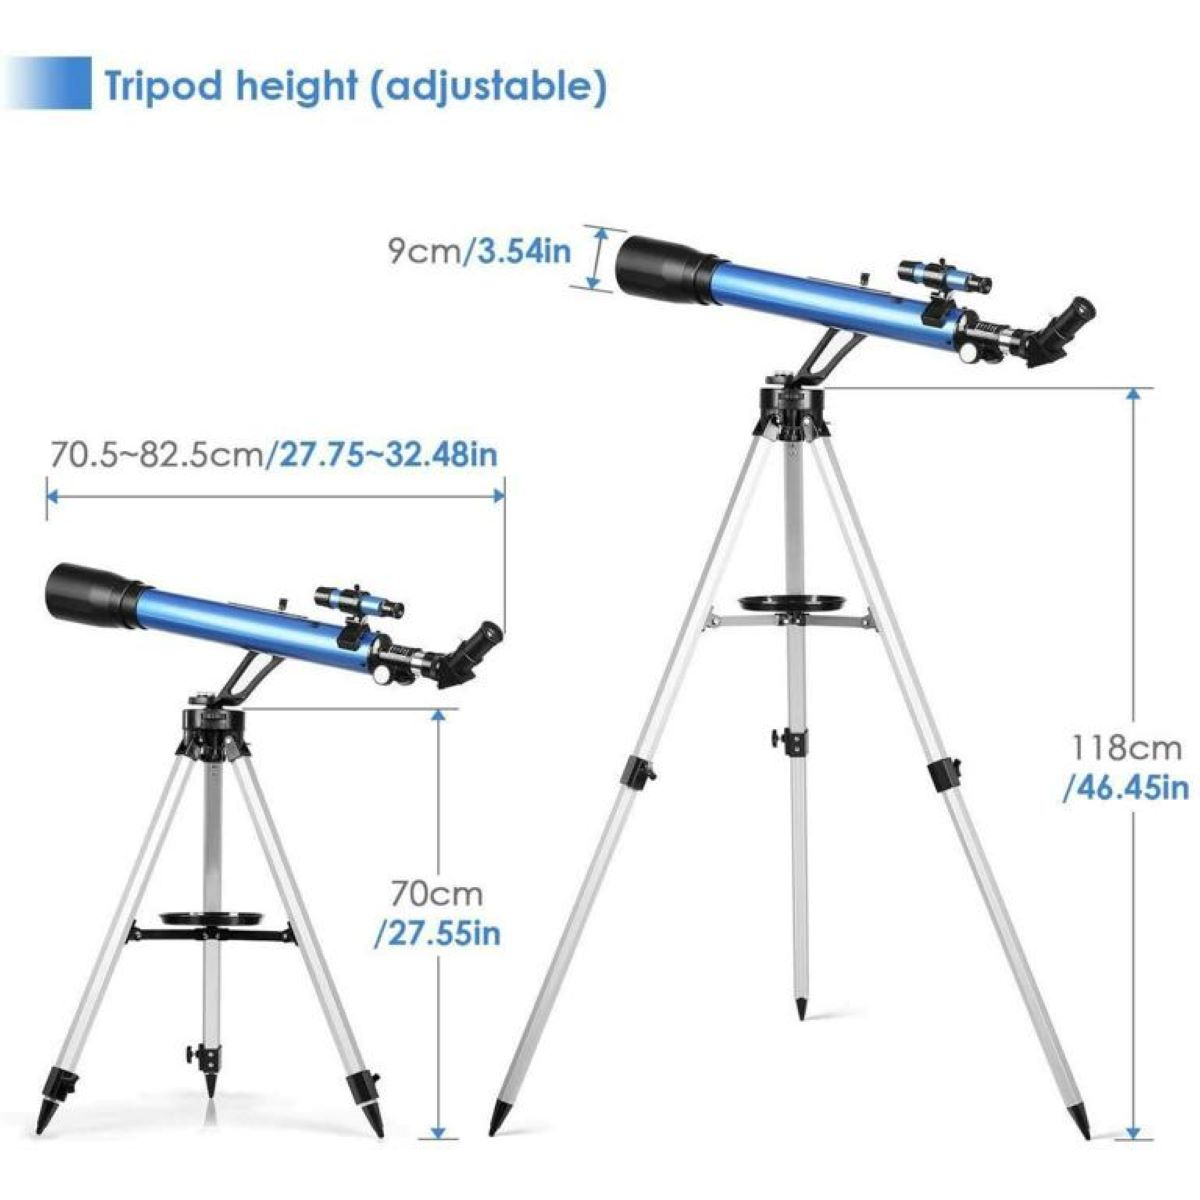 60 Teleskop Binocular mm, 28x, 117x, TELMU